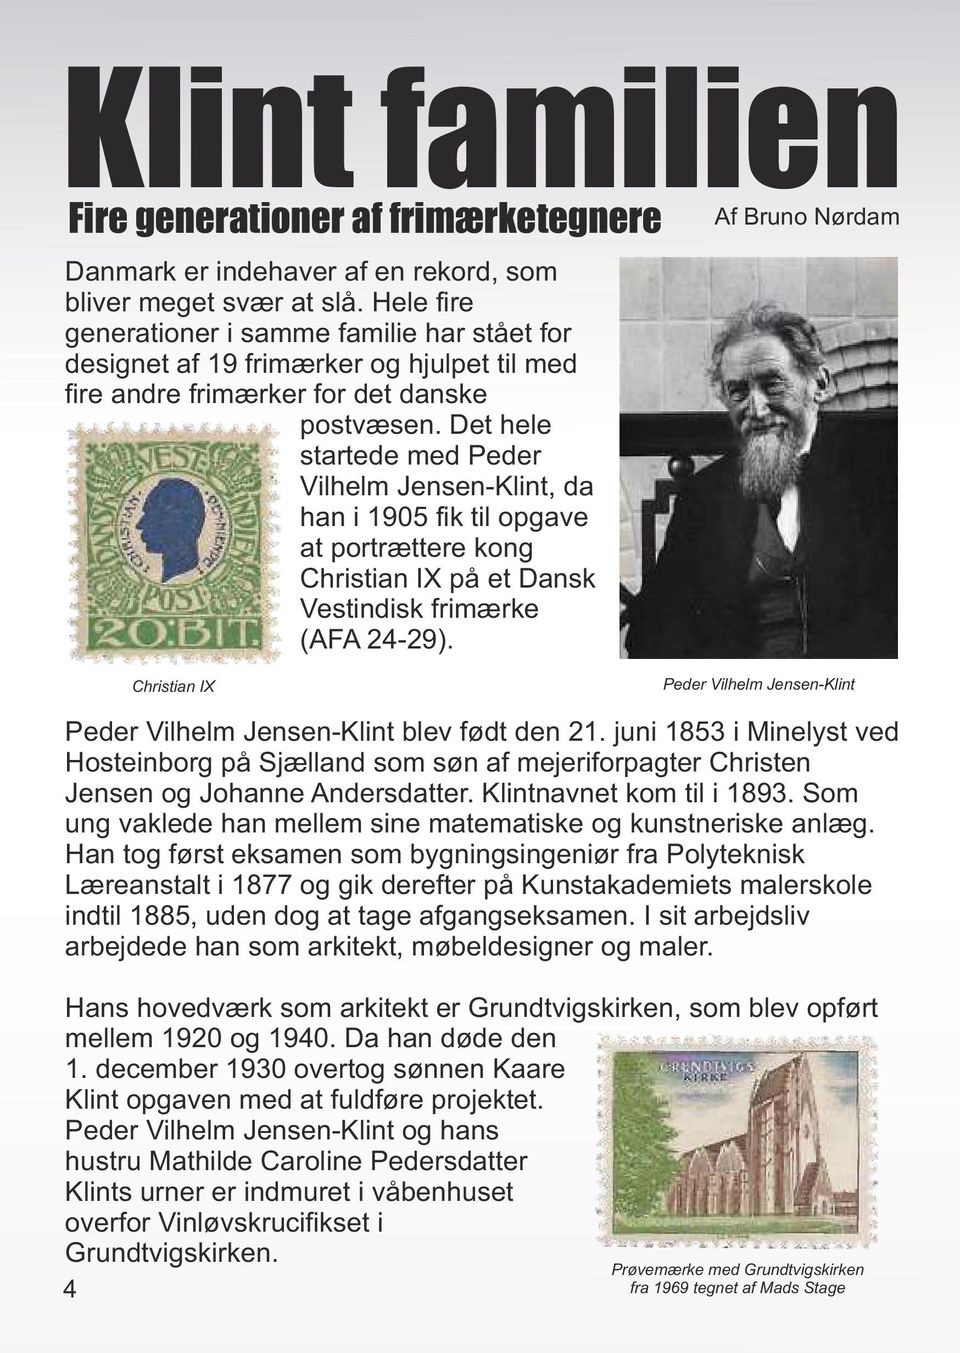 Det hele startede med Peder Vilhelm Jensen-Klint, da han i 1905 fik til opgave at portrættere kong Christian IX på et Dansk Vestindisk frimærke (AFA 24-29).